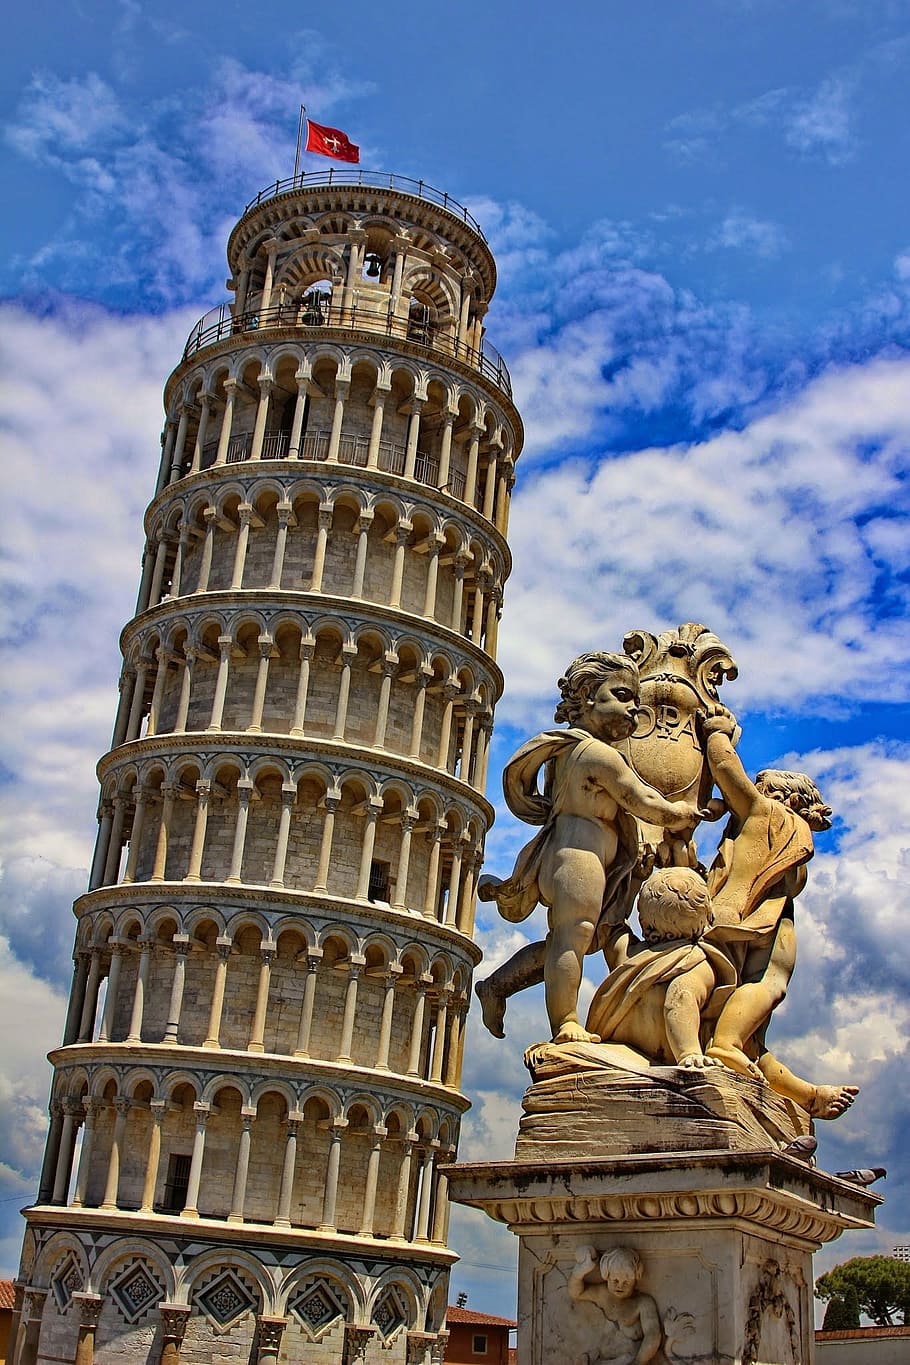 傾いている, タワー, ピサ, イタリア, 傾いている塔, トスカーナ, 建物, 興味の場所, 旅行, ランドマーク